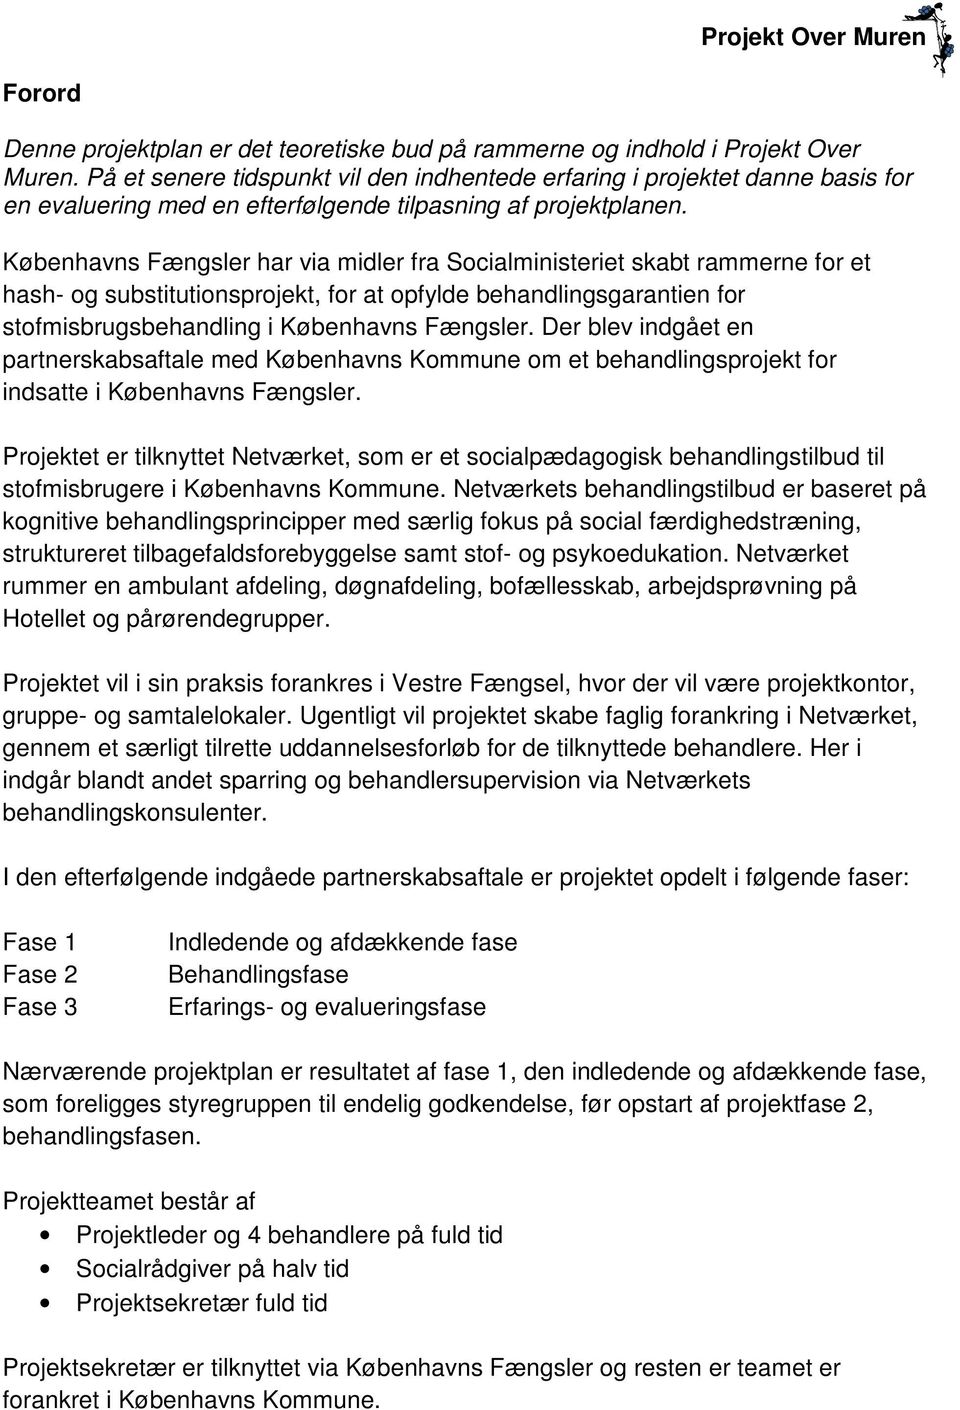 Københavns Fængsler har via midler fra Socialministeriet skabt rammerne for et hash- og substitutionsprojekt, for at opfylde behandlingsgarantien for stofmisbrugsbehandling i Københavns Fængsler.